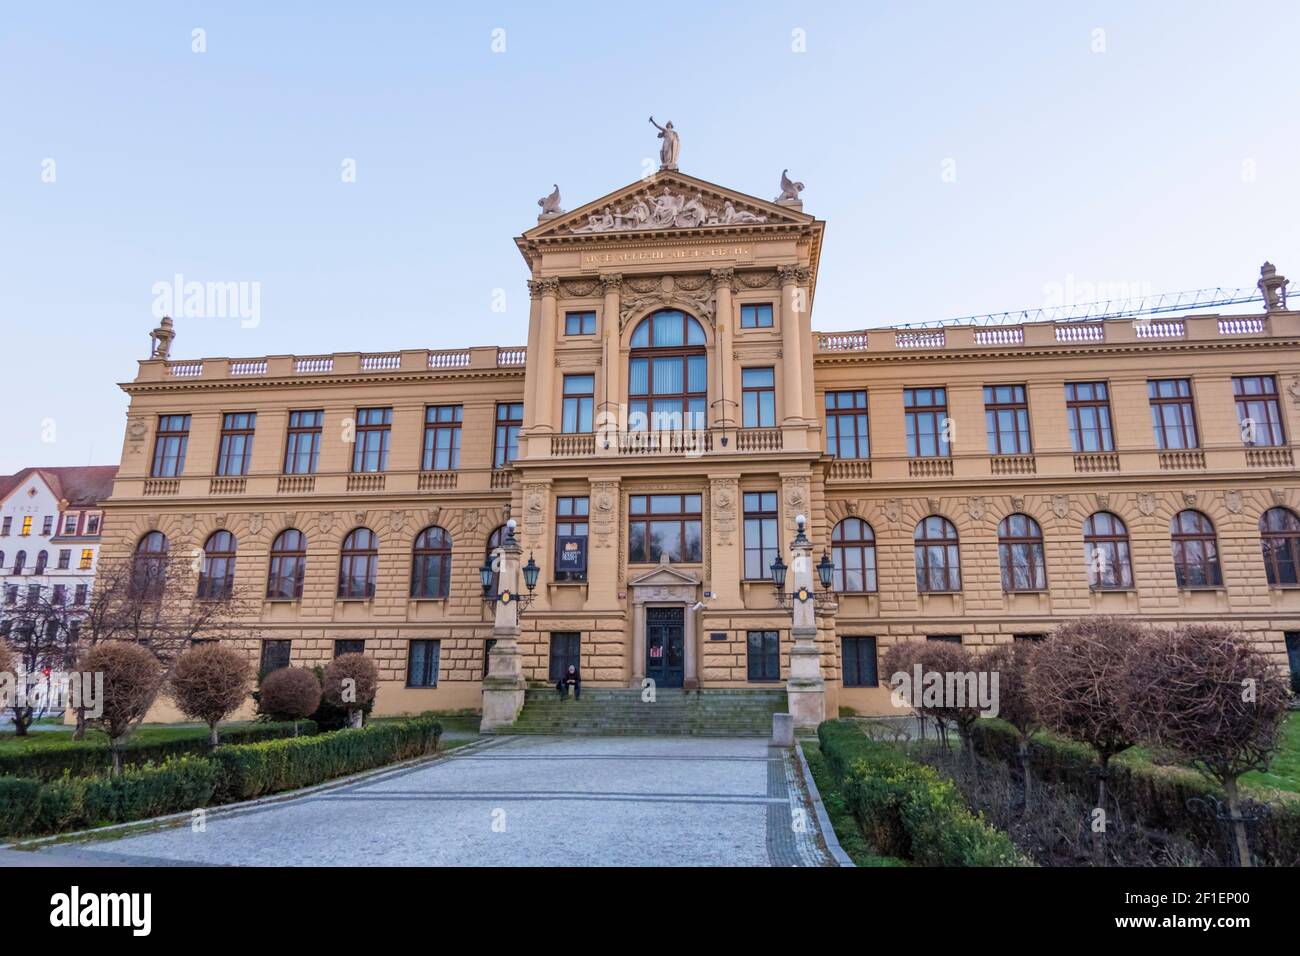 Muzeum hlavního města Prahy, bâtiment principal du musée de la ville de Prague, Florenc, Prague, République tchèque Banque D'Images